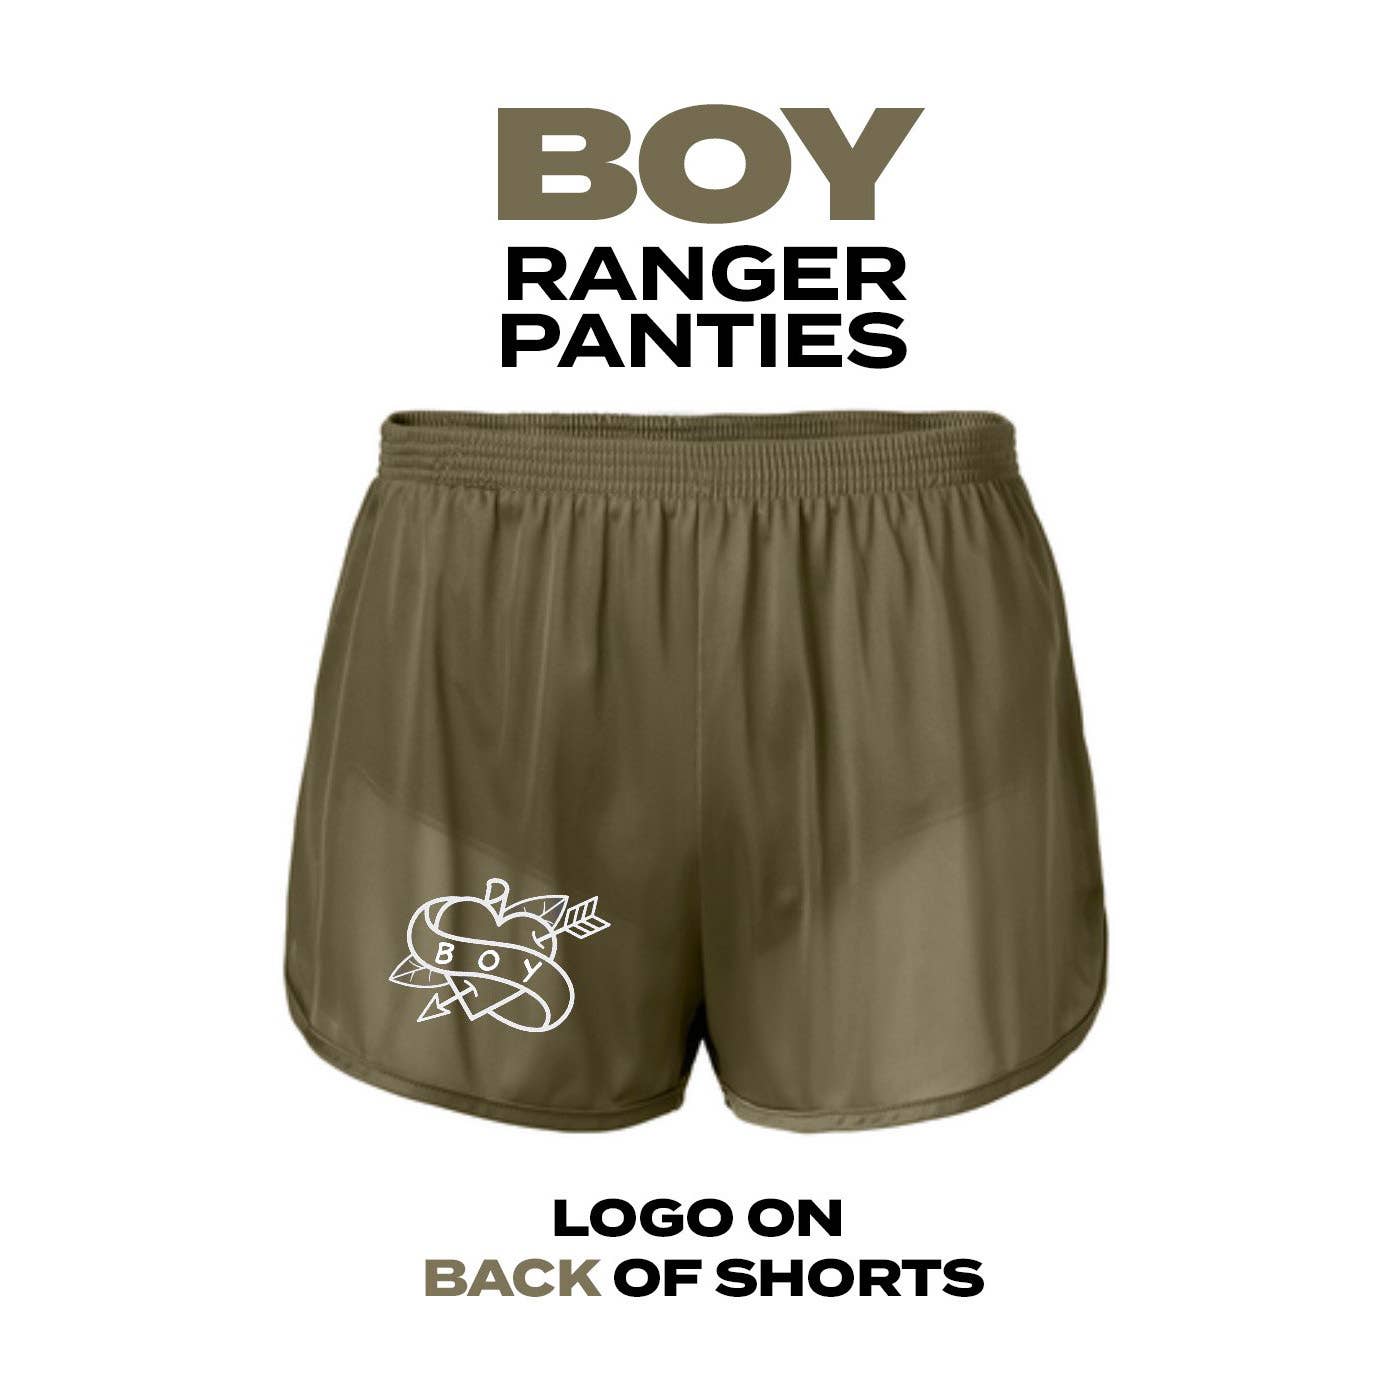 TOM OF FINLAND - Ranger Shorts (Boy/Daddy): Boy/Tan/Green